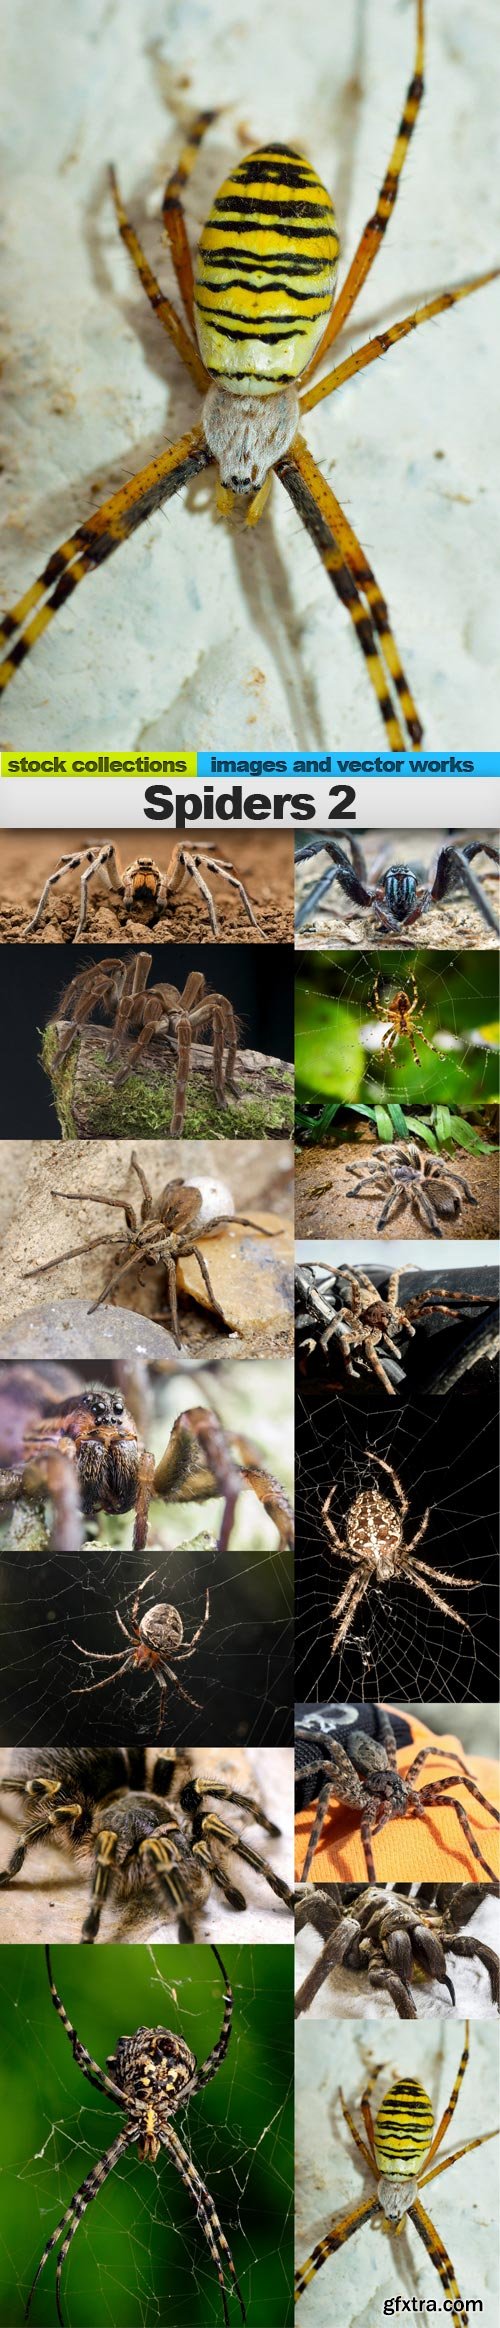 Spiders 2, 15 x UHQ JPEG